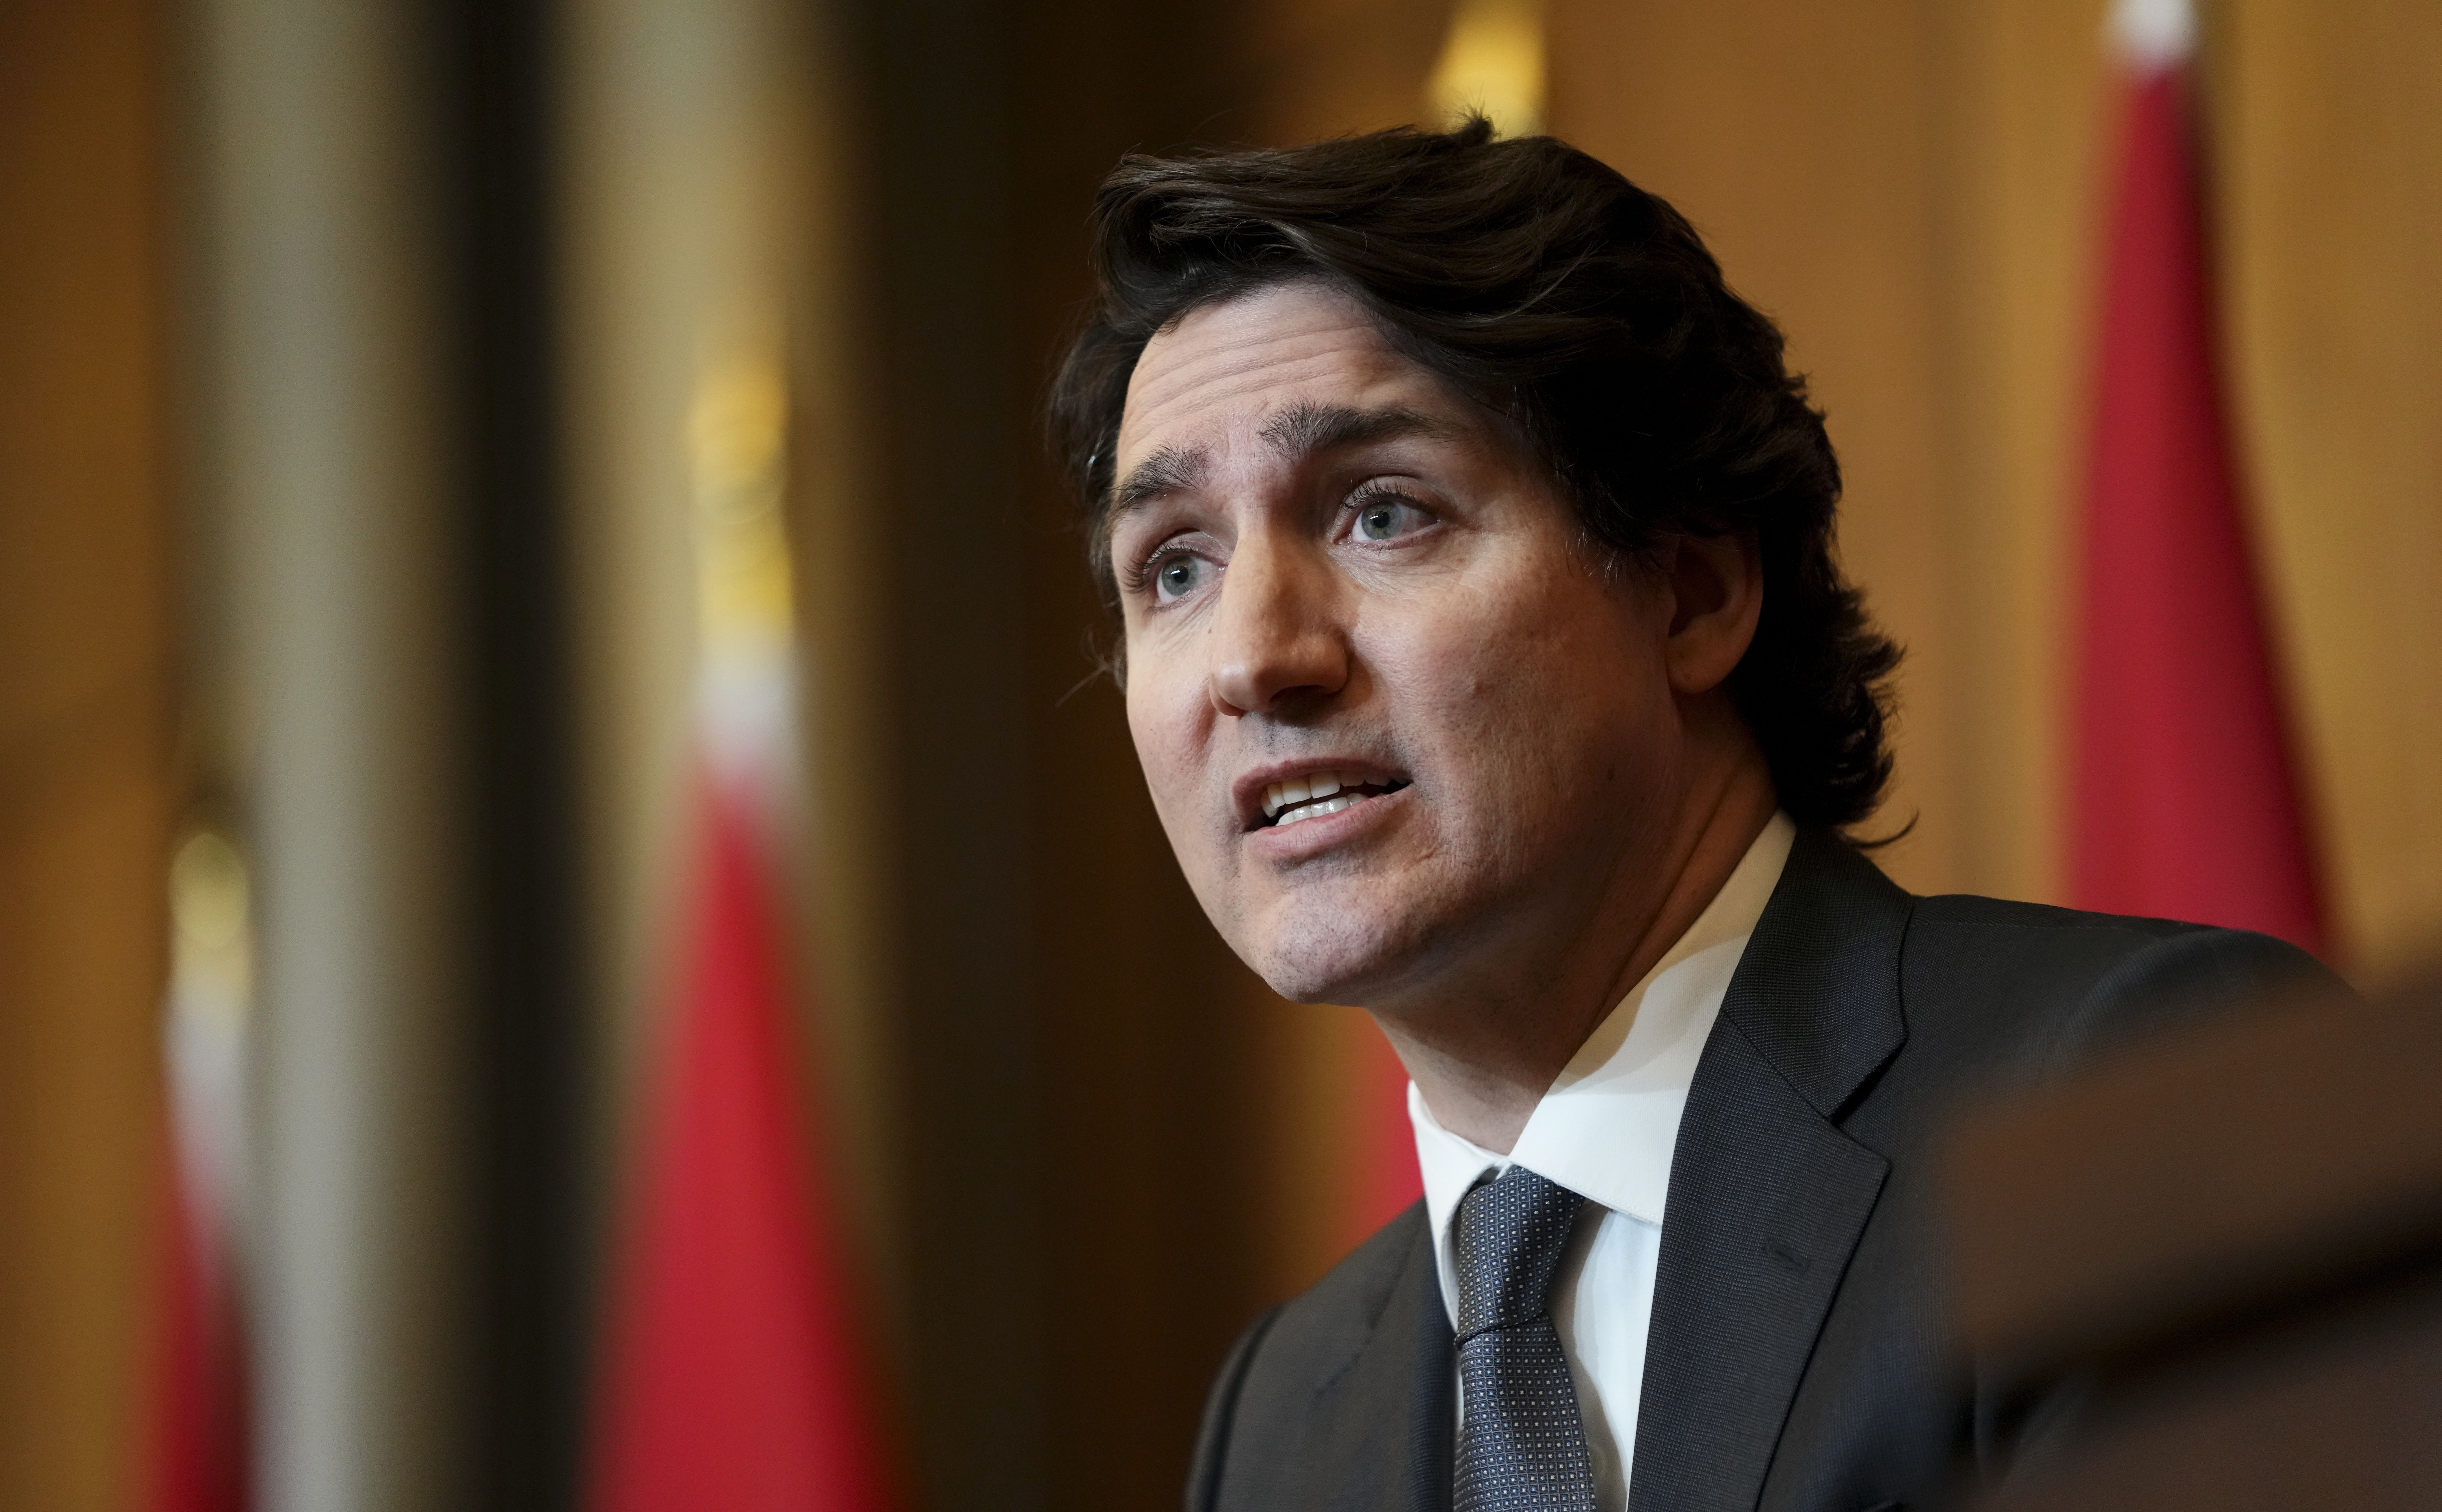 Los antivacunas ahogan a Canadá y Trudeau los acusa de bloquear la democracia